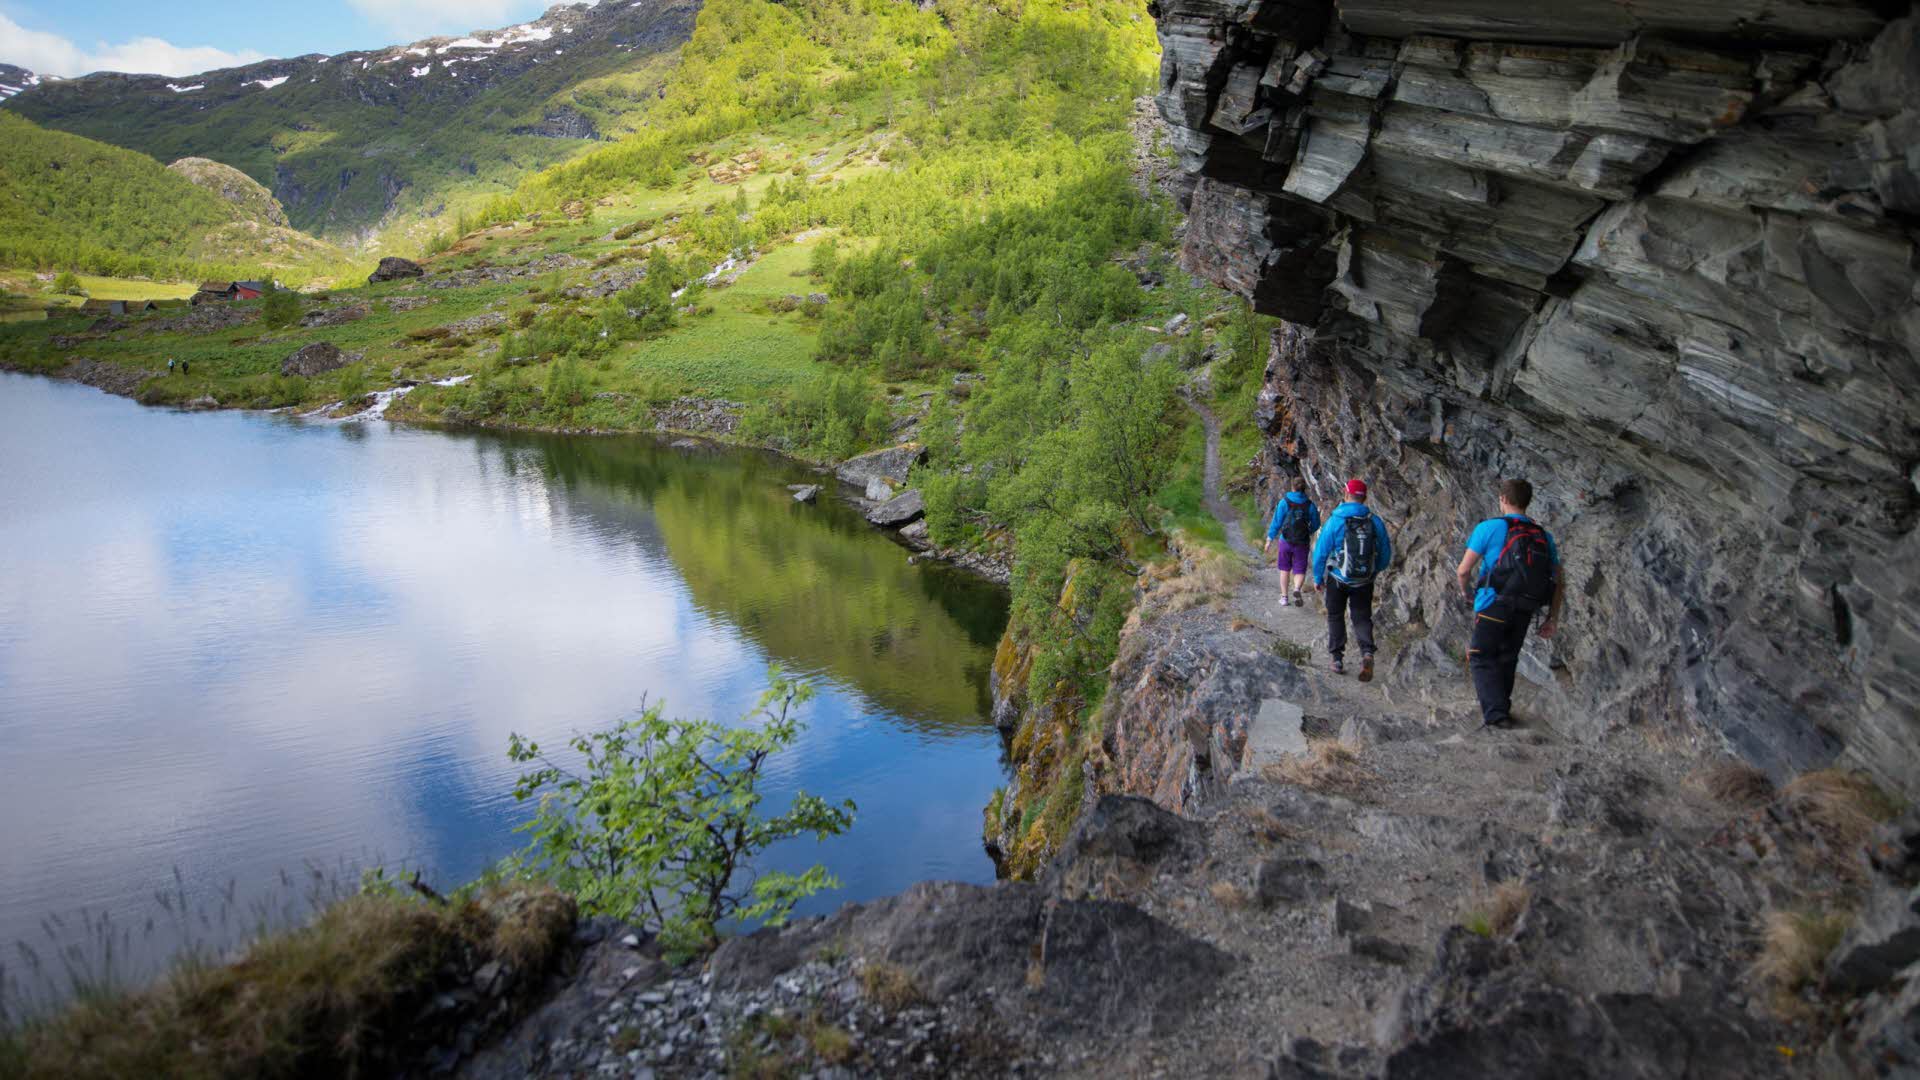 アウルランド渓谷の湖のほとりの崖の下を3人の方が歩いています。